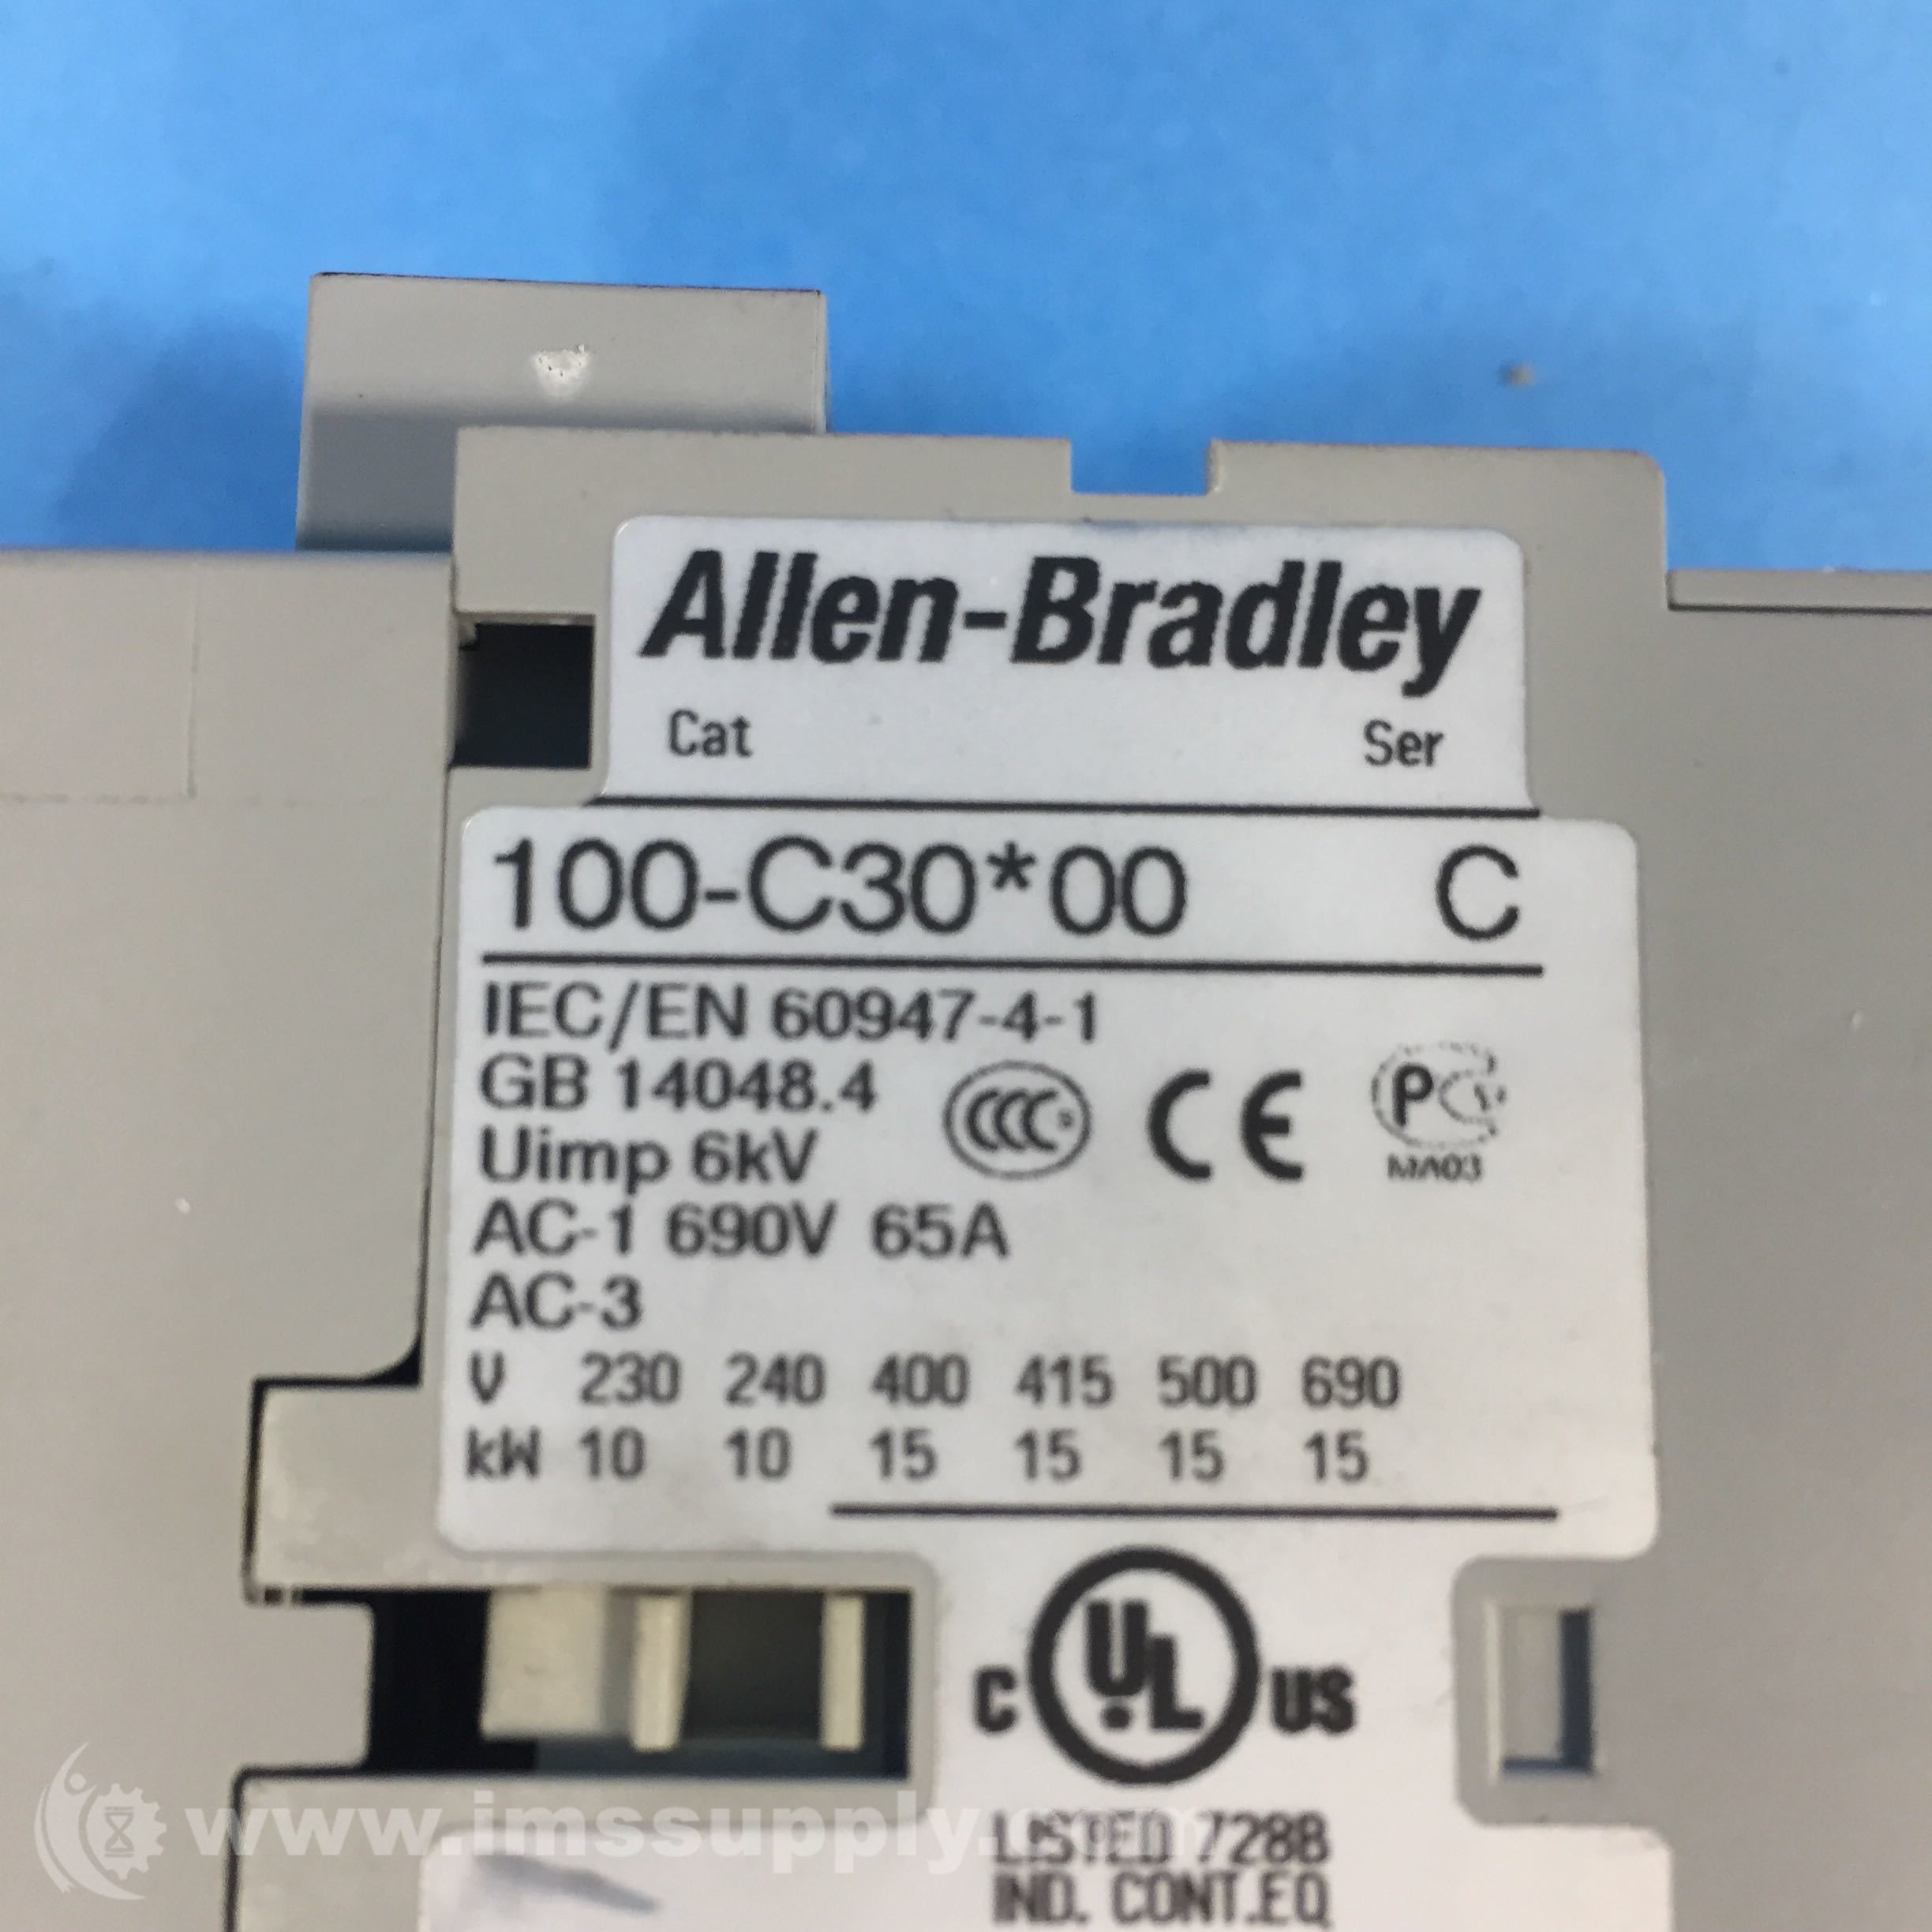 10 x Allen-Bradley 100-C30*00 Contactors